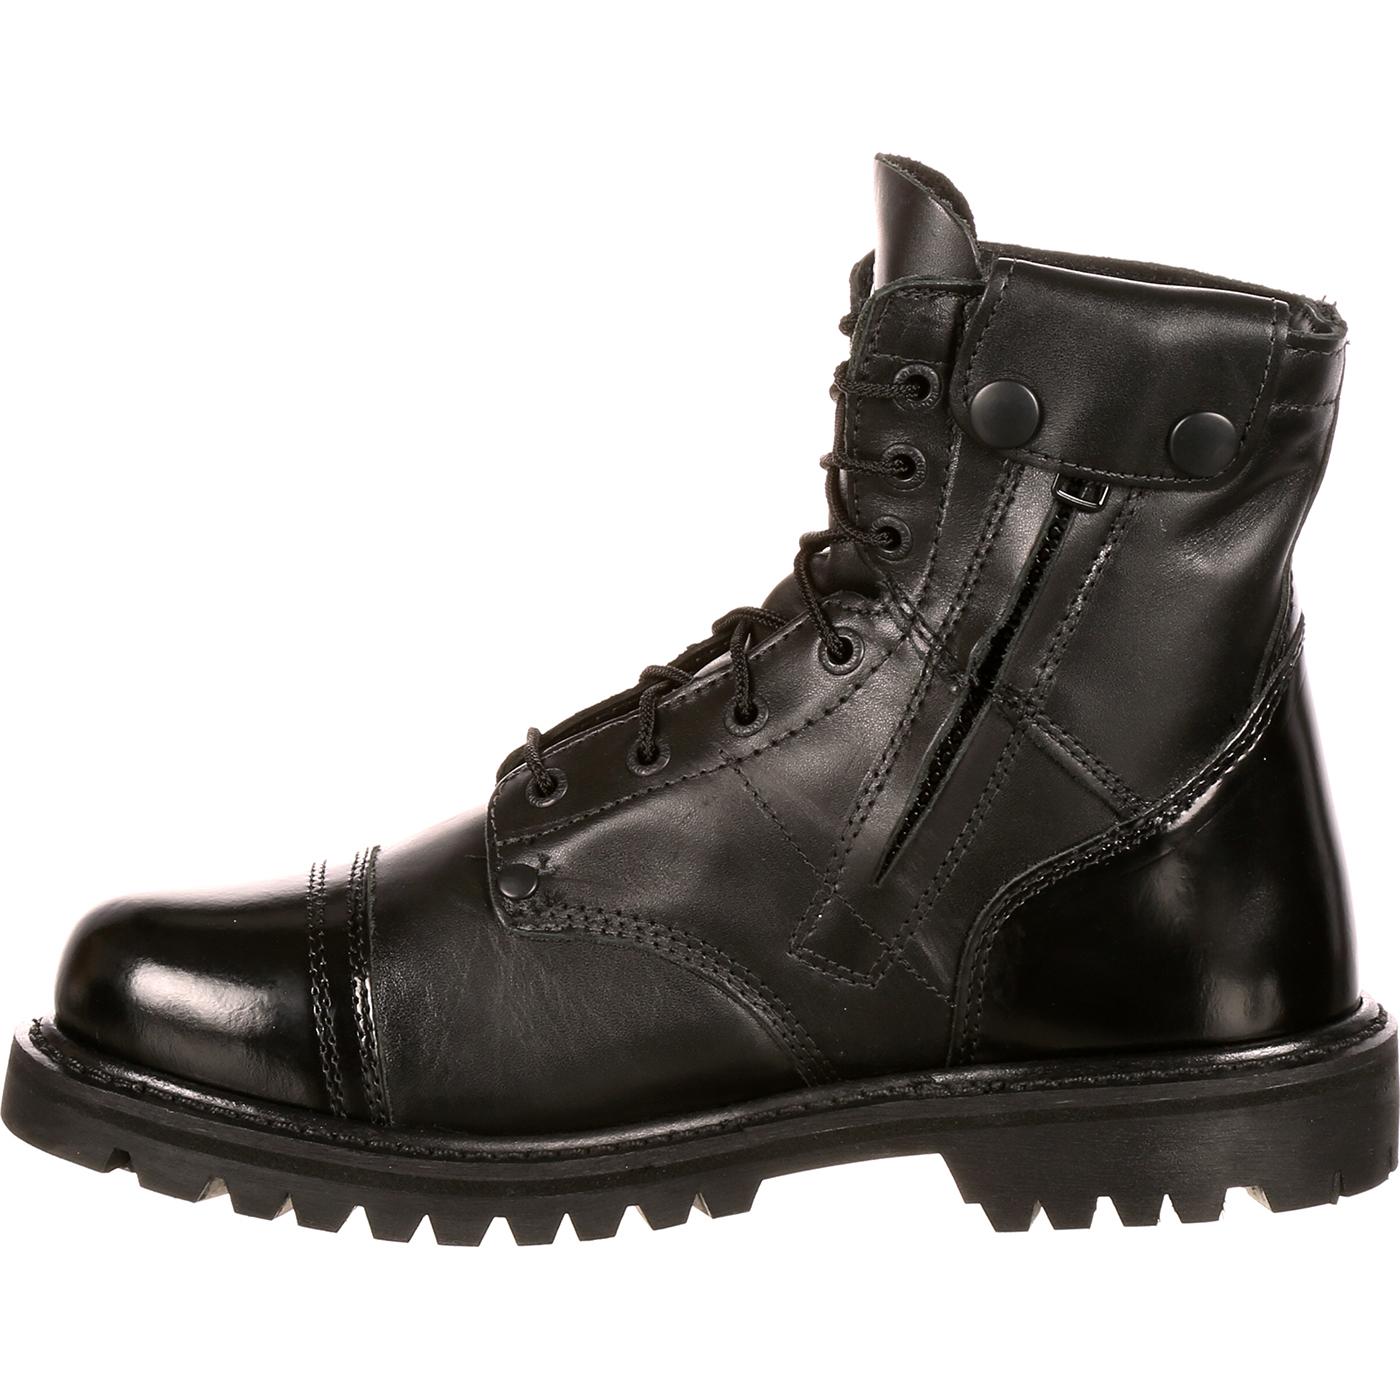 Rocky Duty Boots: Men's Black Side Zipper 7-Inch Jump Boot